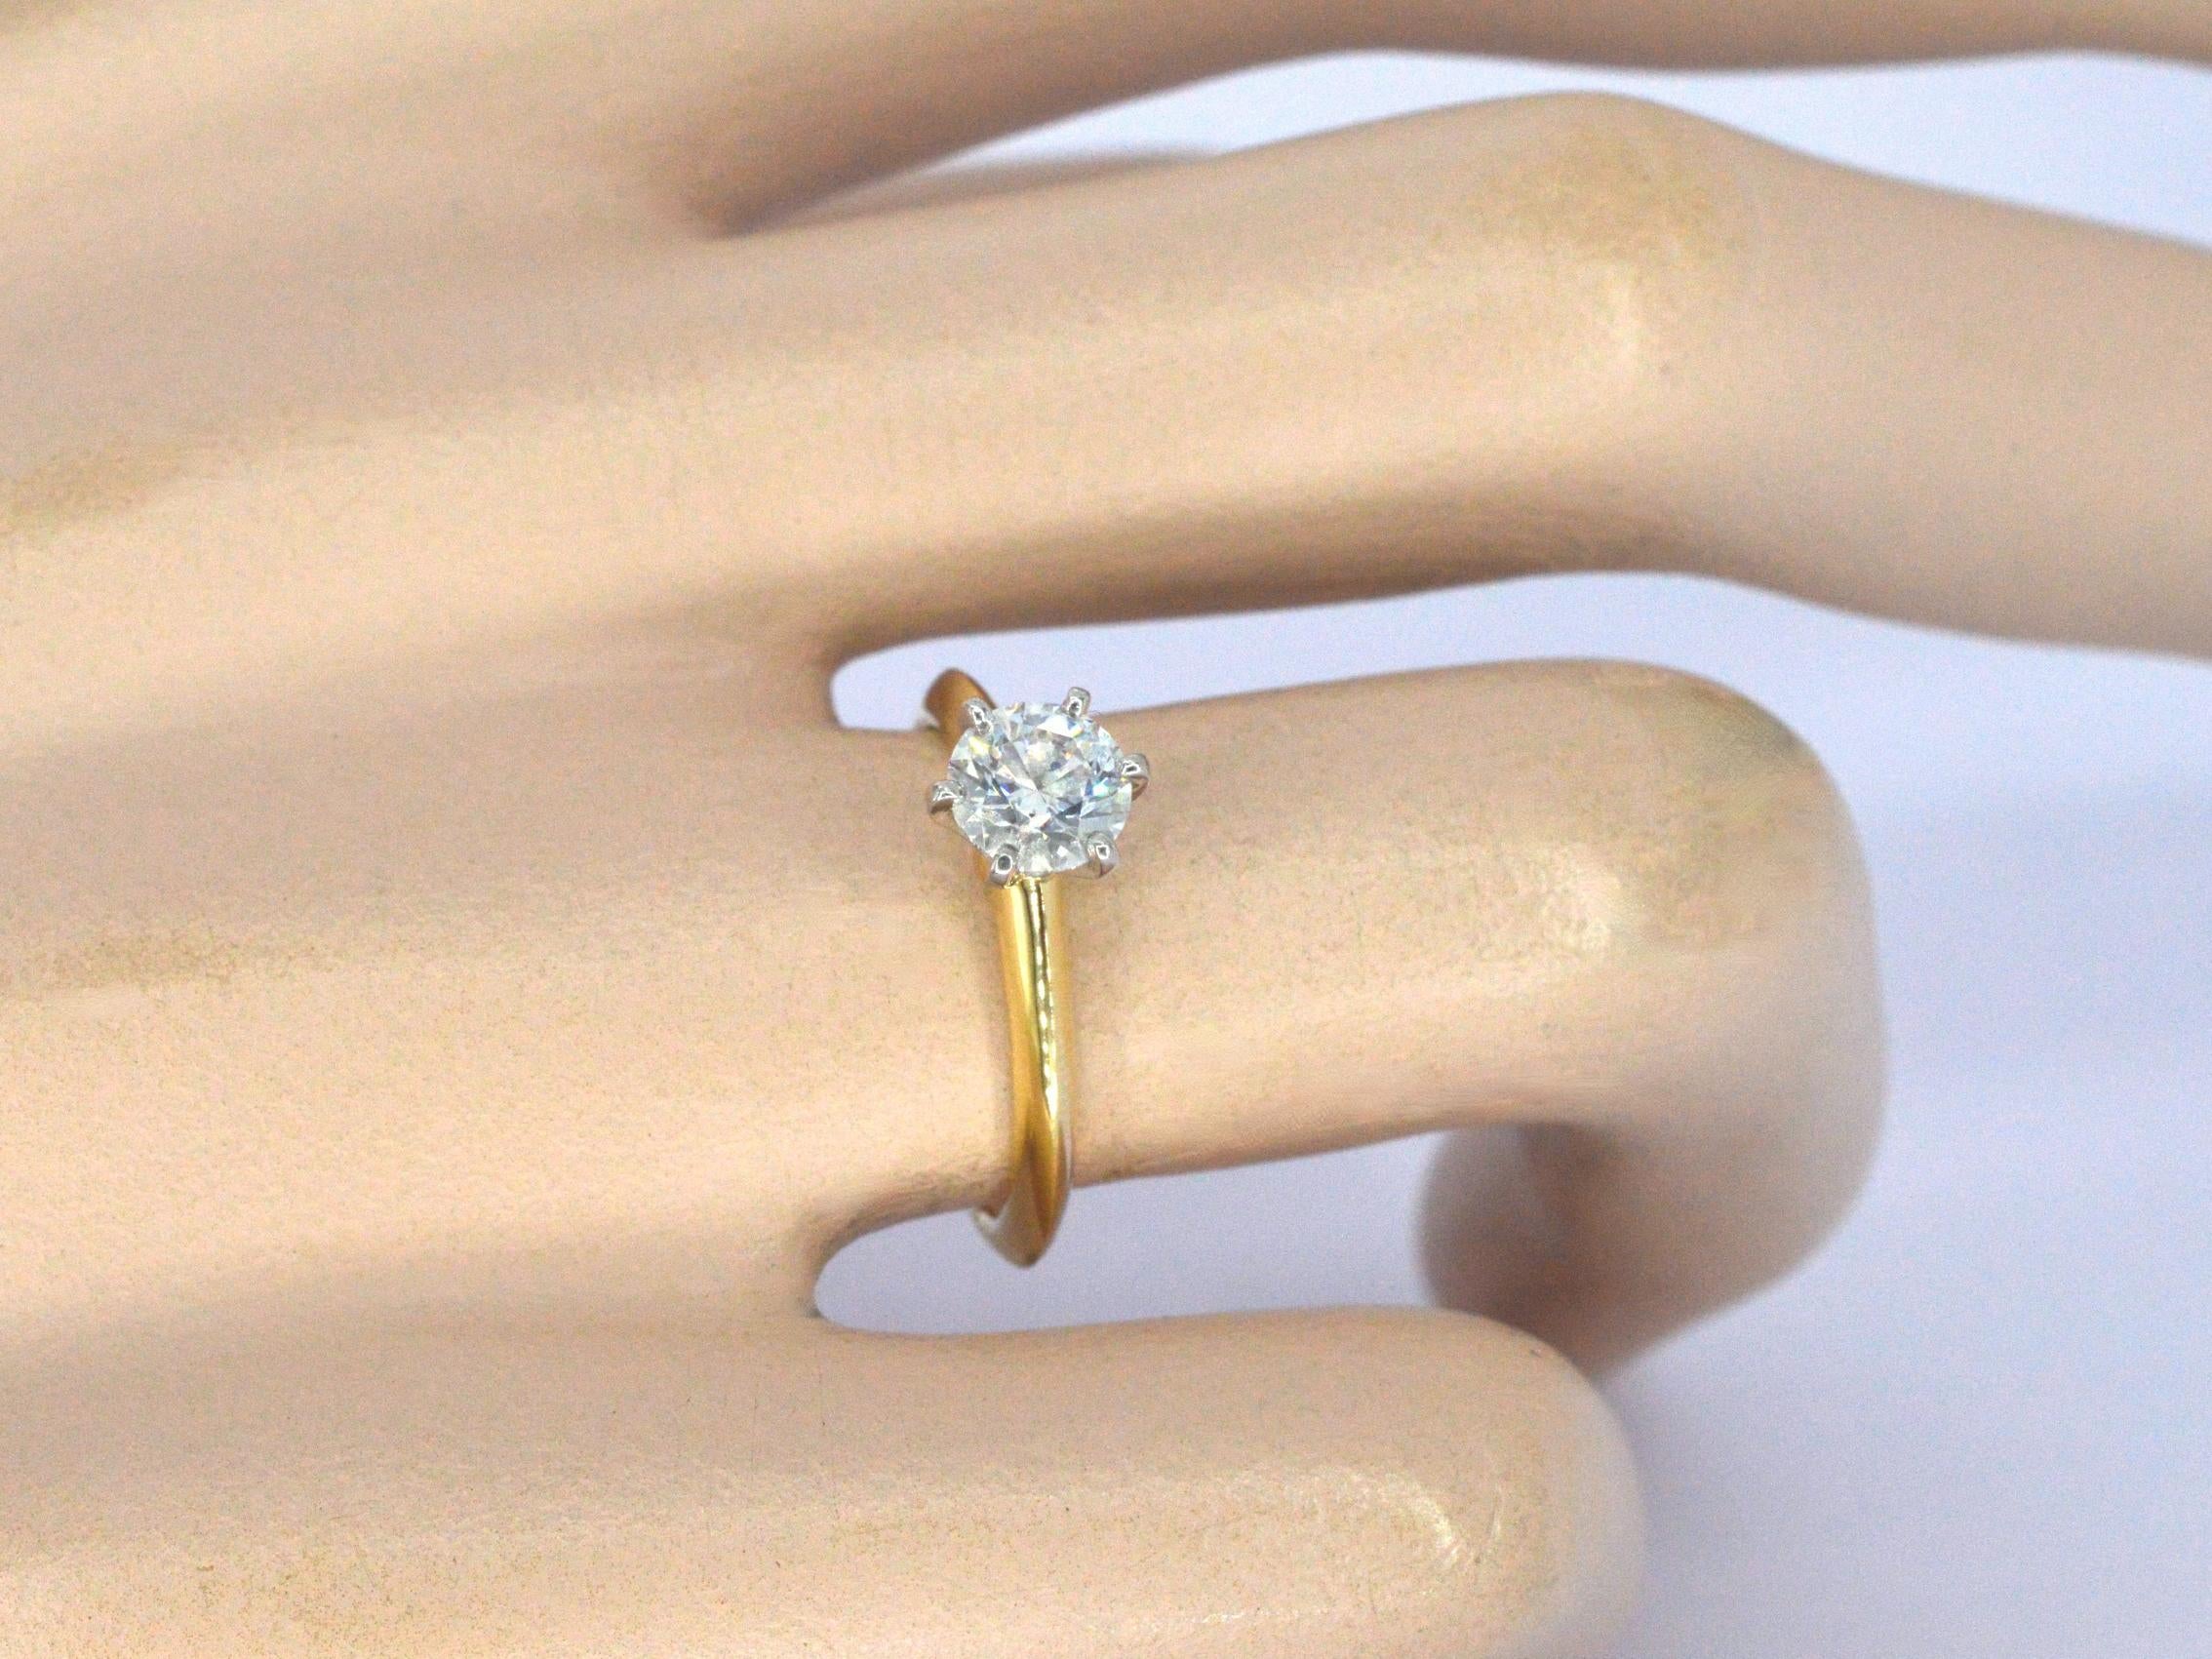 Einführung der kultigen Tiffany & Co. Der Tiffany-Fassungsring, ein zeitloses Symbol für Eleganz und Luxus. Dieser exquisite Ring besteht aus einem einzelnen Diamanten im Brillantschliff mit einem Gewicht von 0,74 Karat, der mit seiner